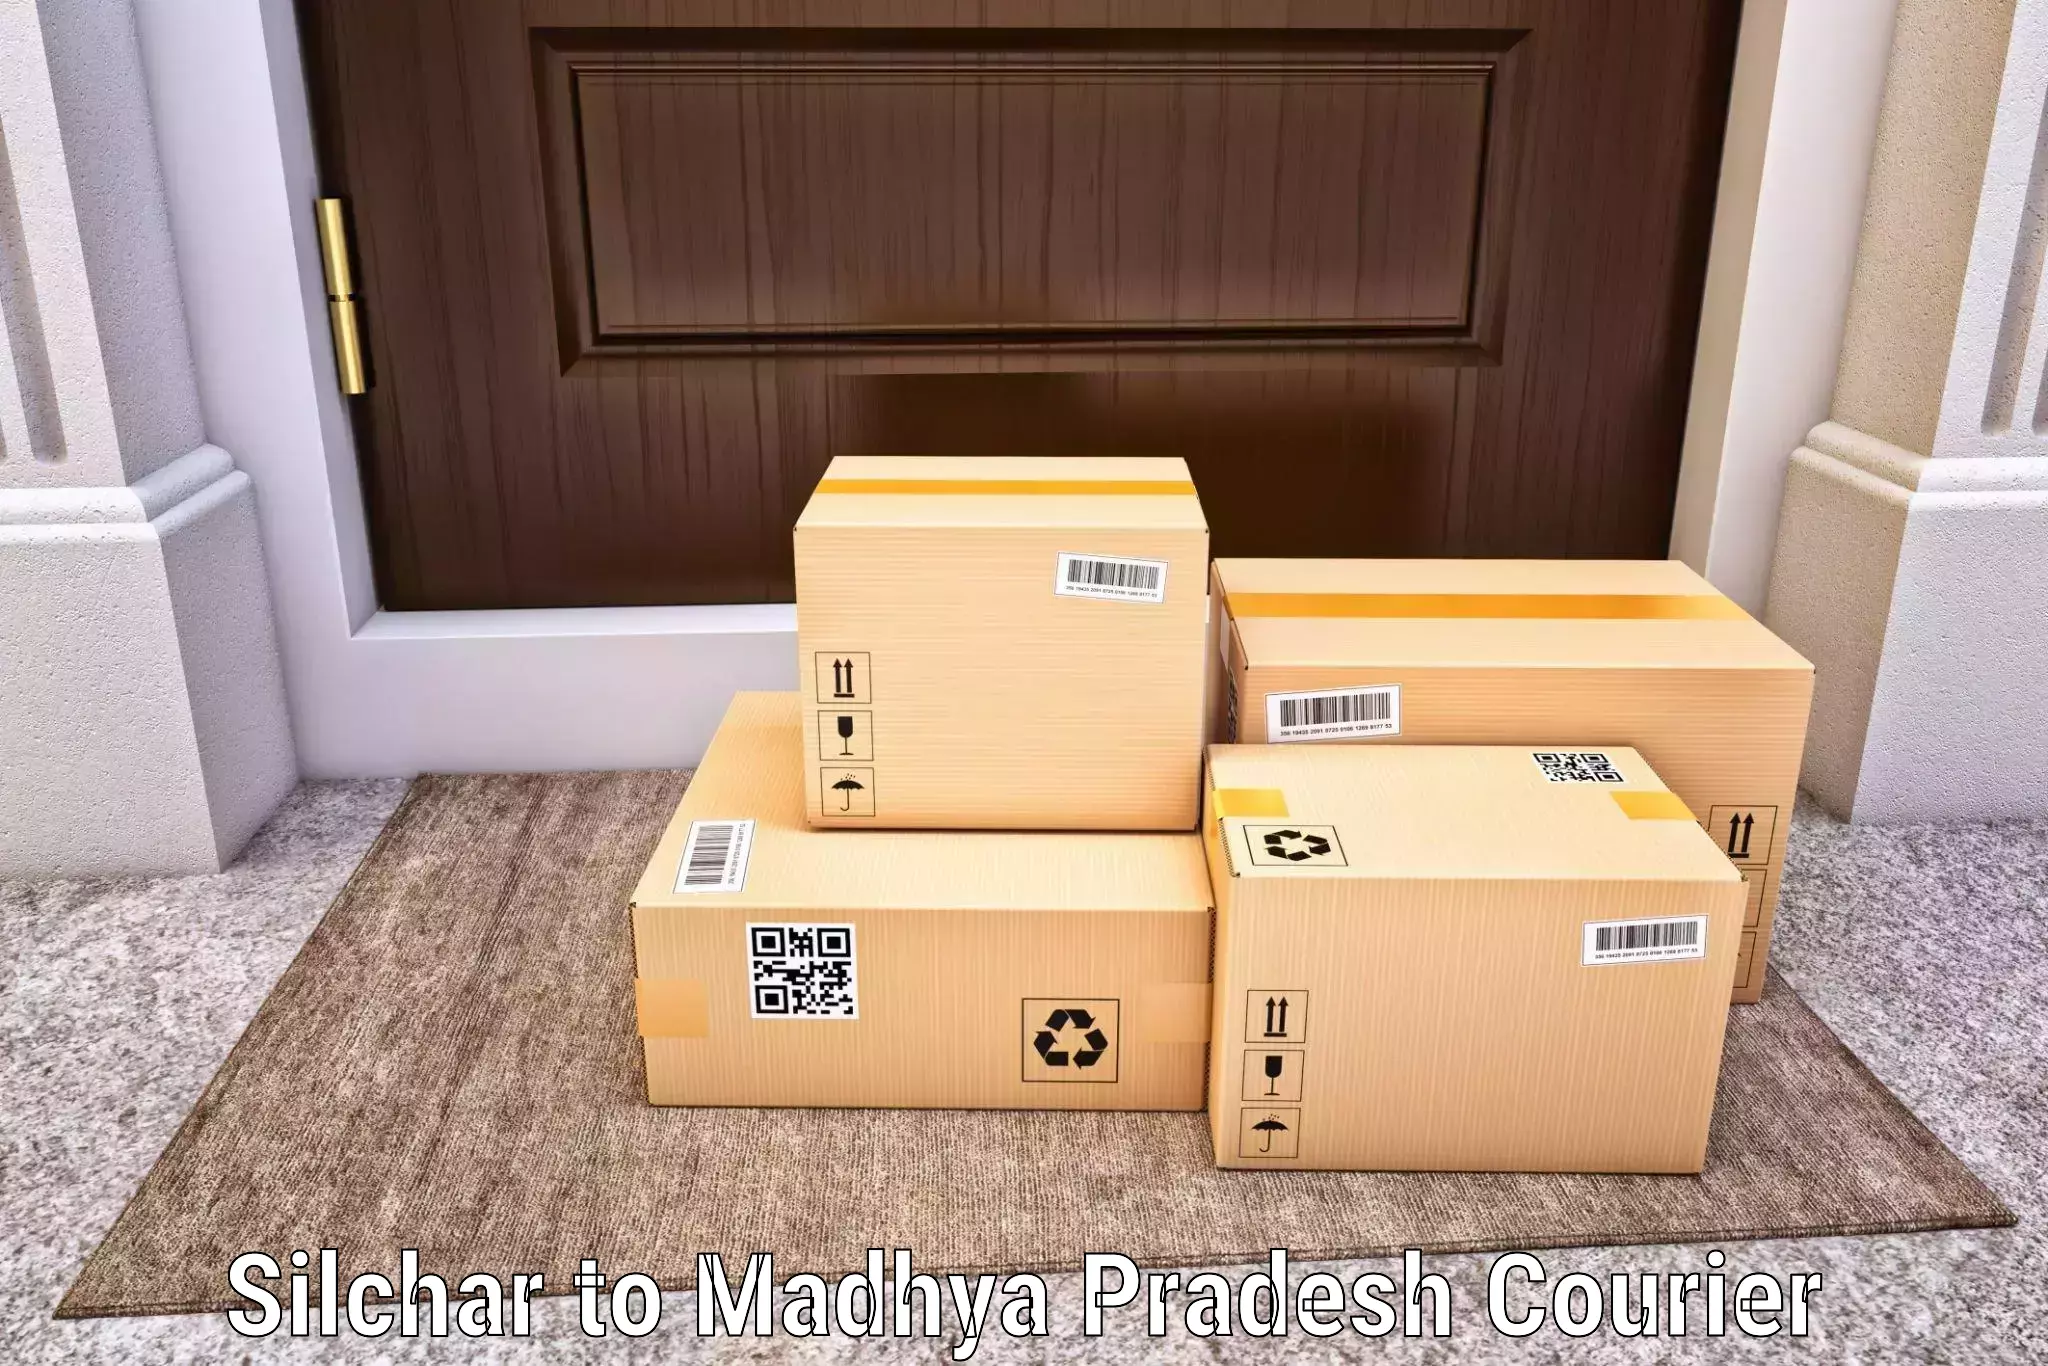 Cash on delivery service Silchar to Amarkantak